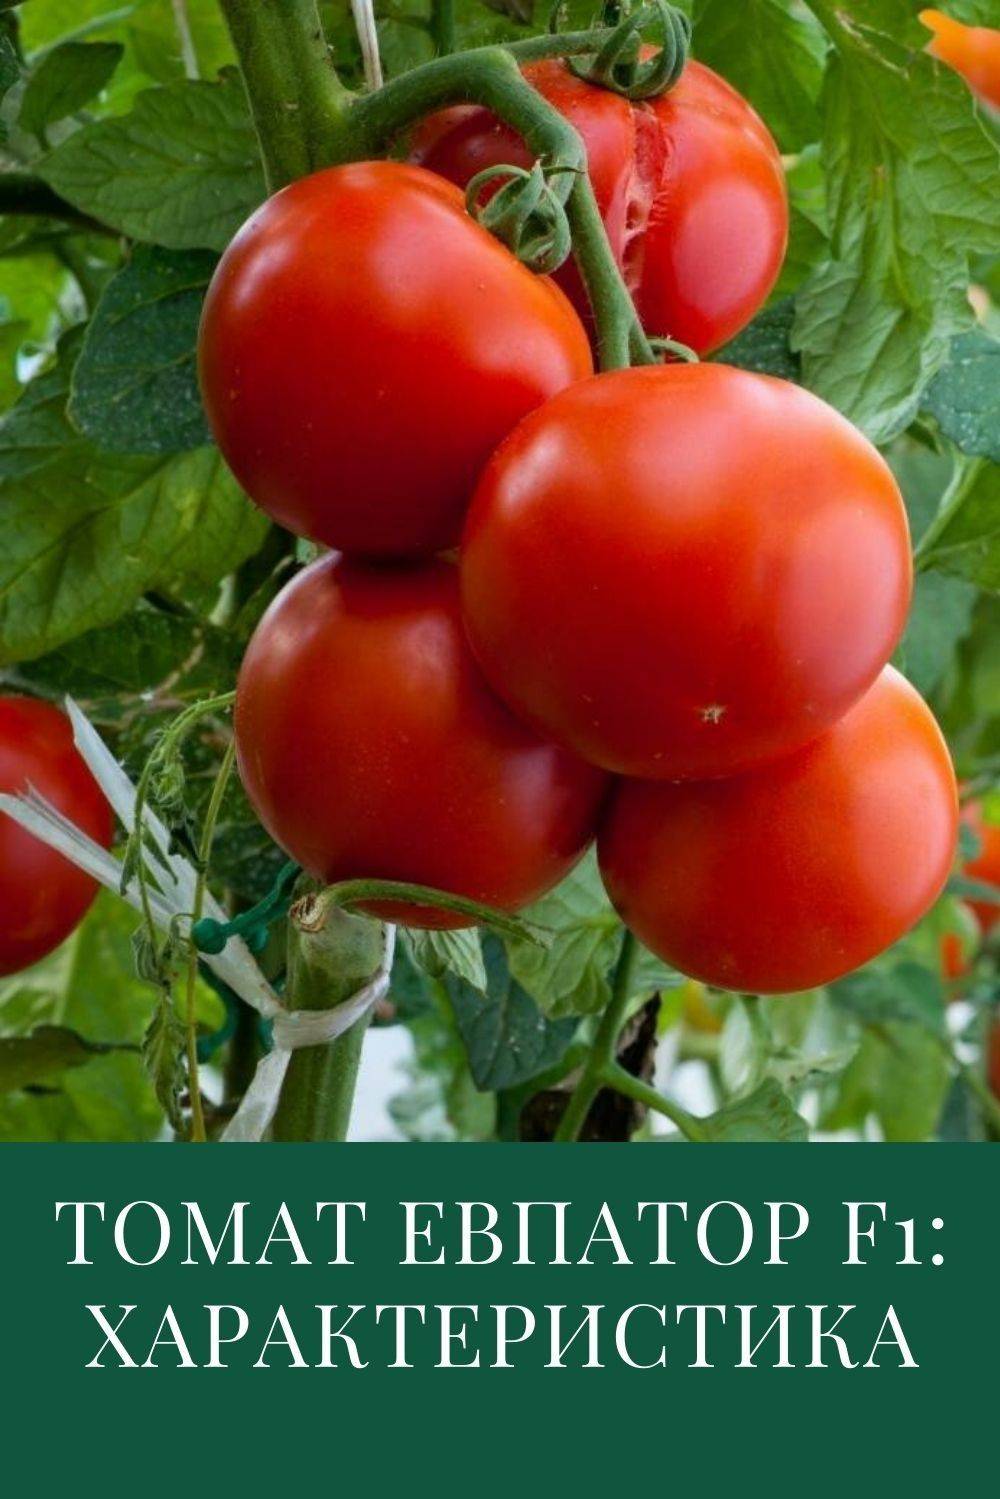 Томат татьяна: описание, отзывы, фото, урожайность сорта